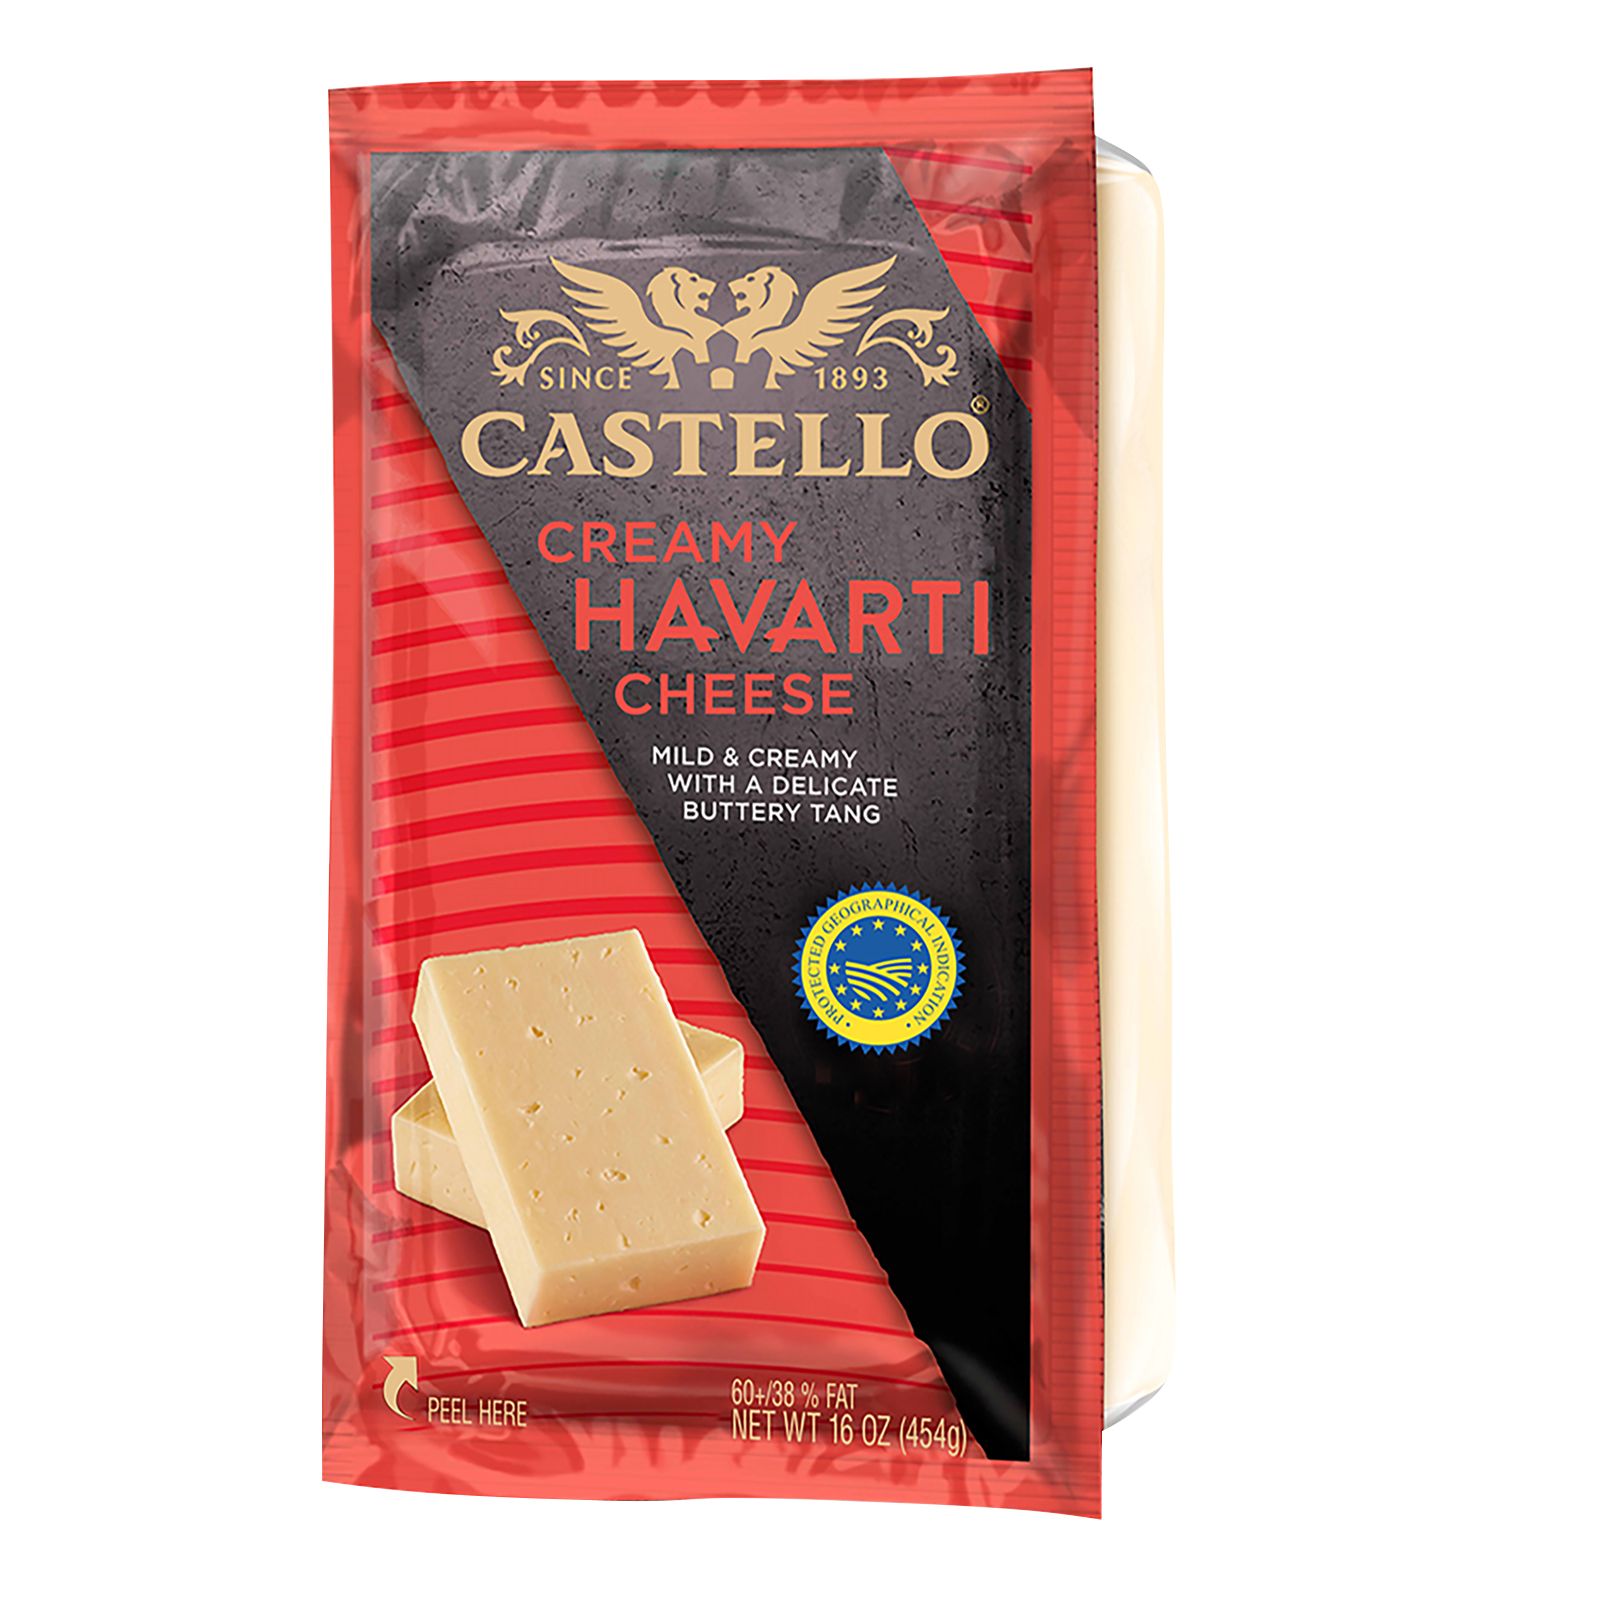 Castello Danish Creamy Havarti Cheese, 16 oz.